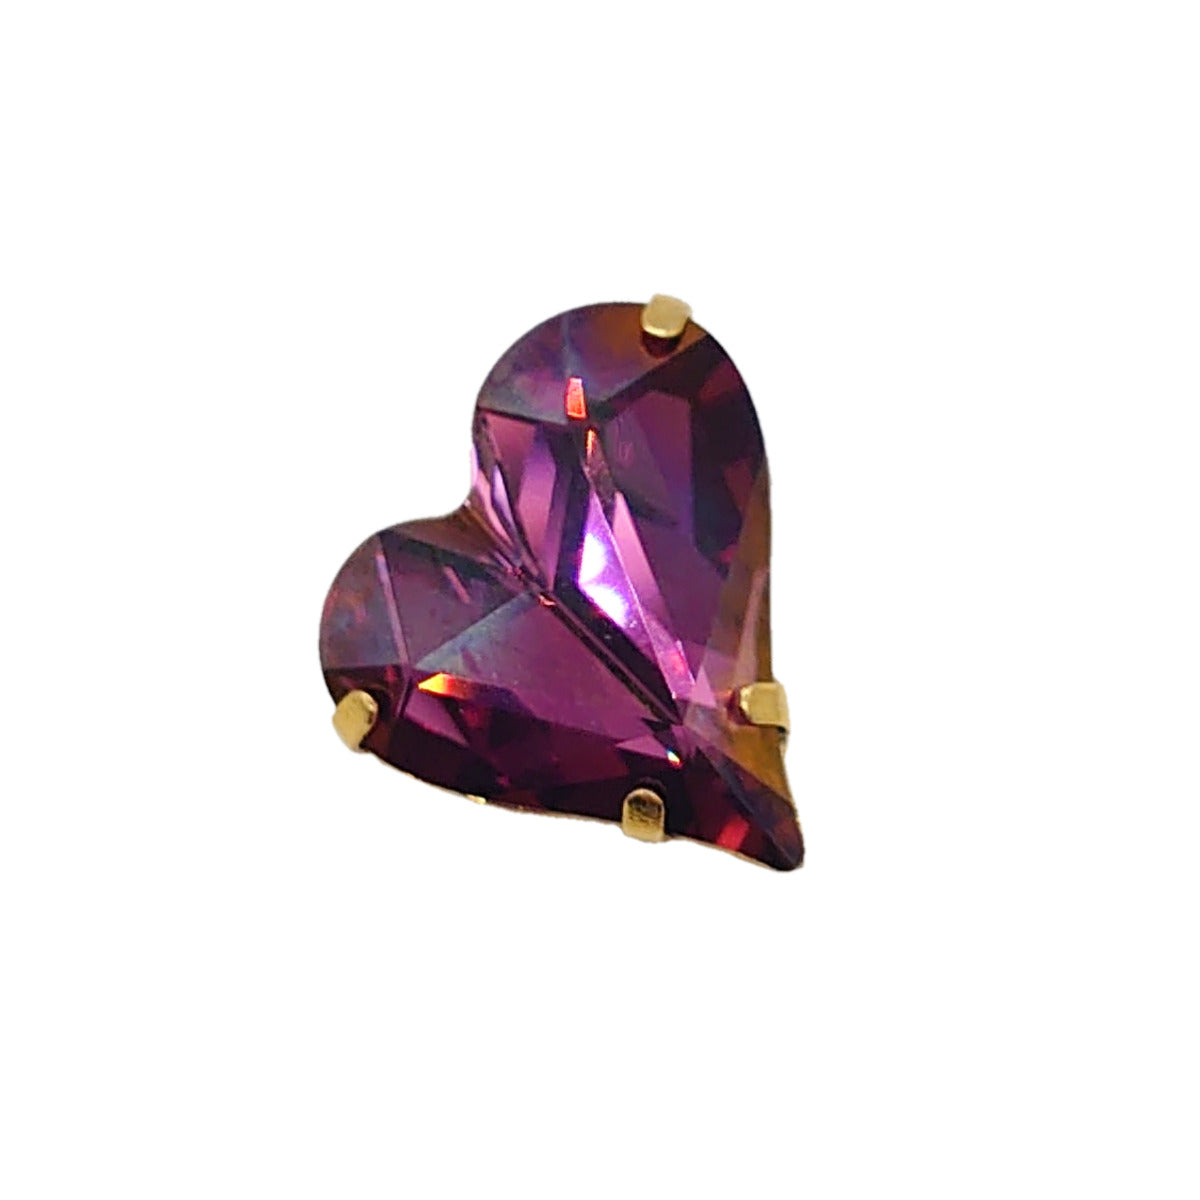 Heart Brooch - Gold Fittings - Swarovski Crystals